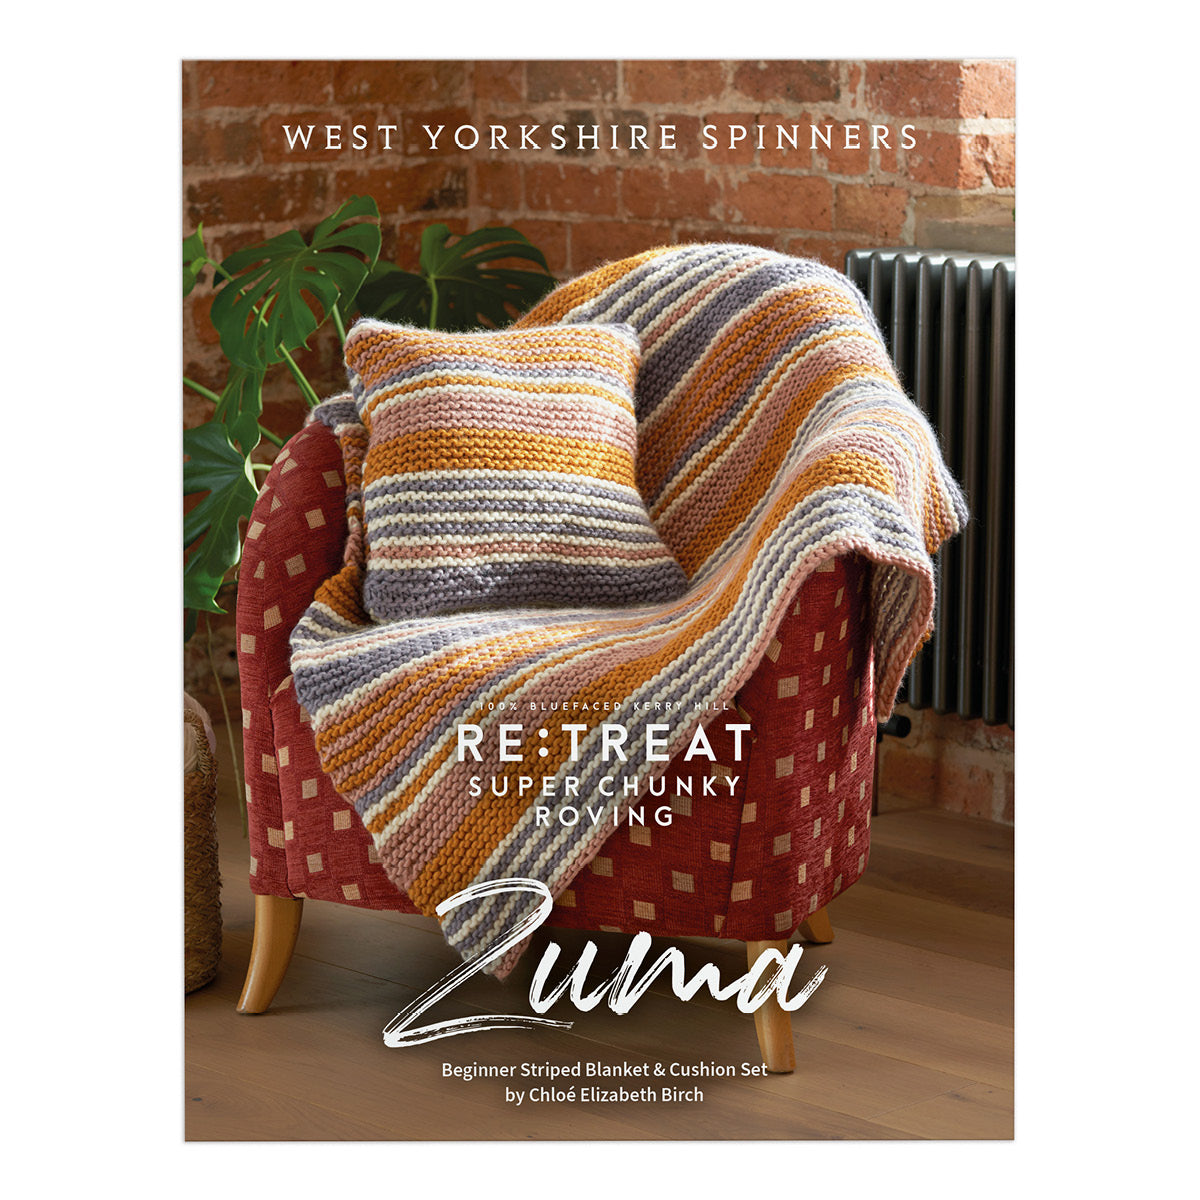 Zuma Blanket and Cushion Knitting Pattern (PDF Download)